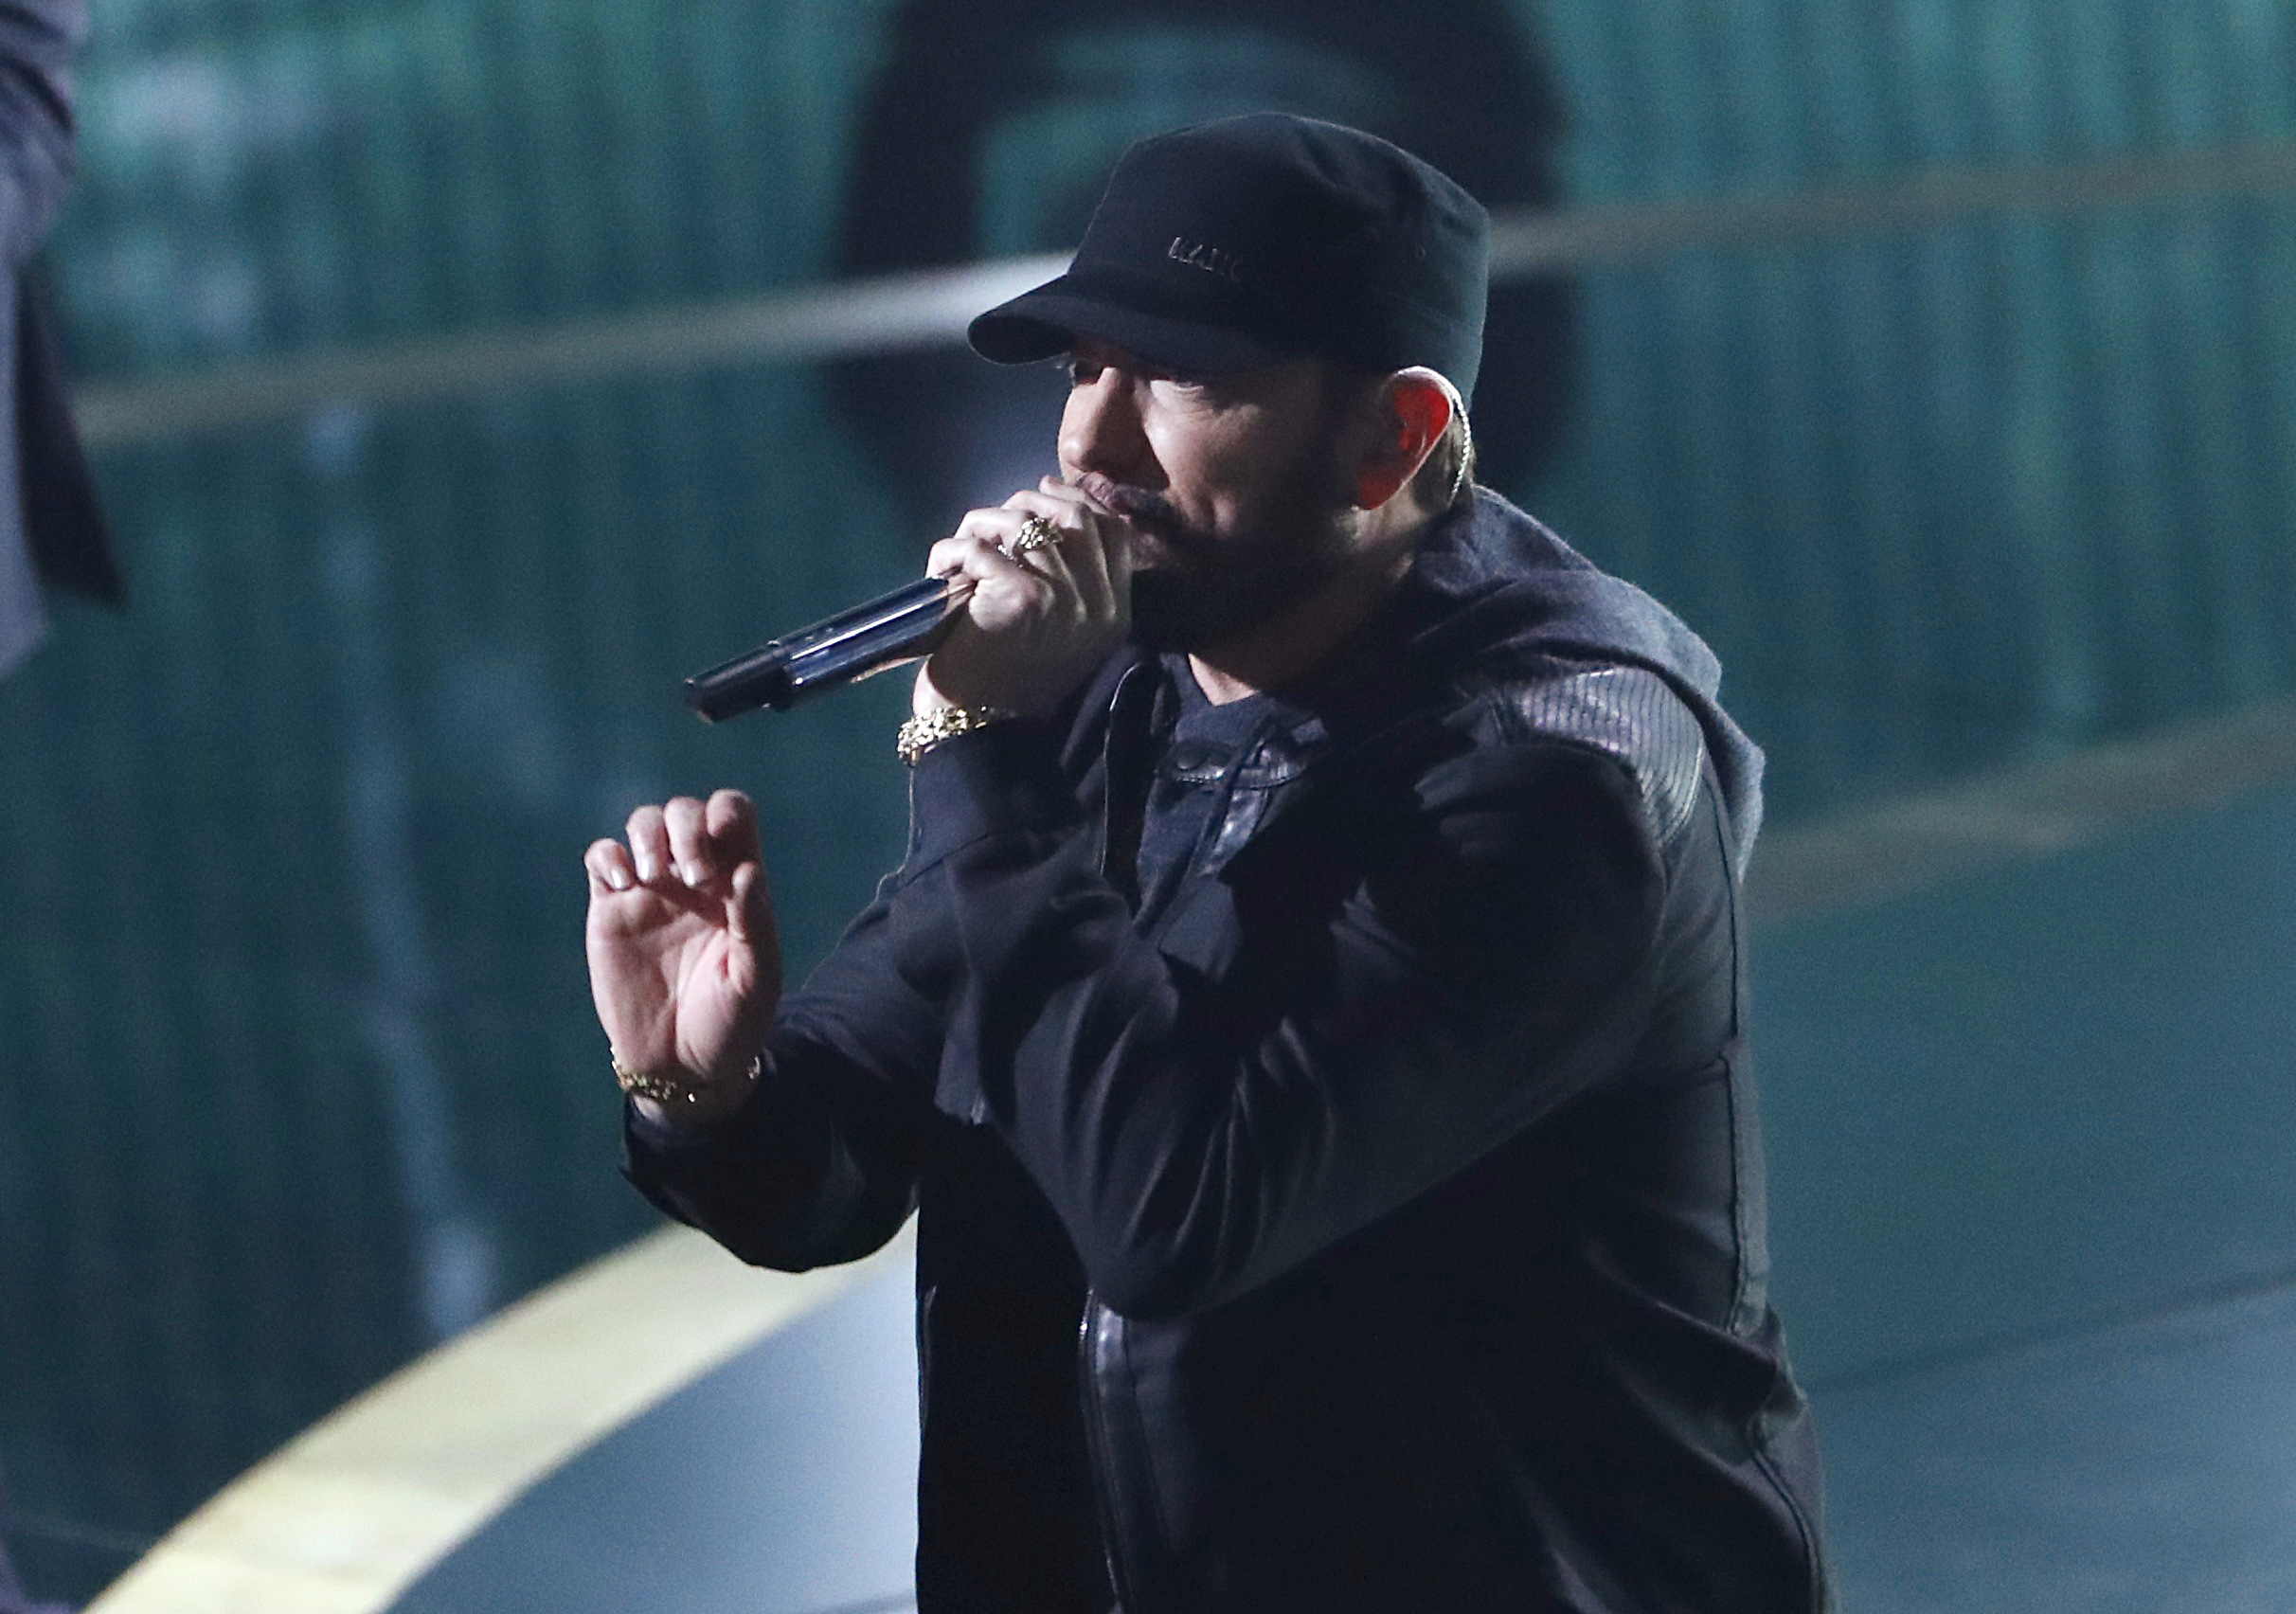 ΟΣΚΑΡ 2020: Ο Eminem εμφανίστηκε επί σκηνής και ξεσήκωσε τους πάντες! [pics,video]